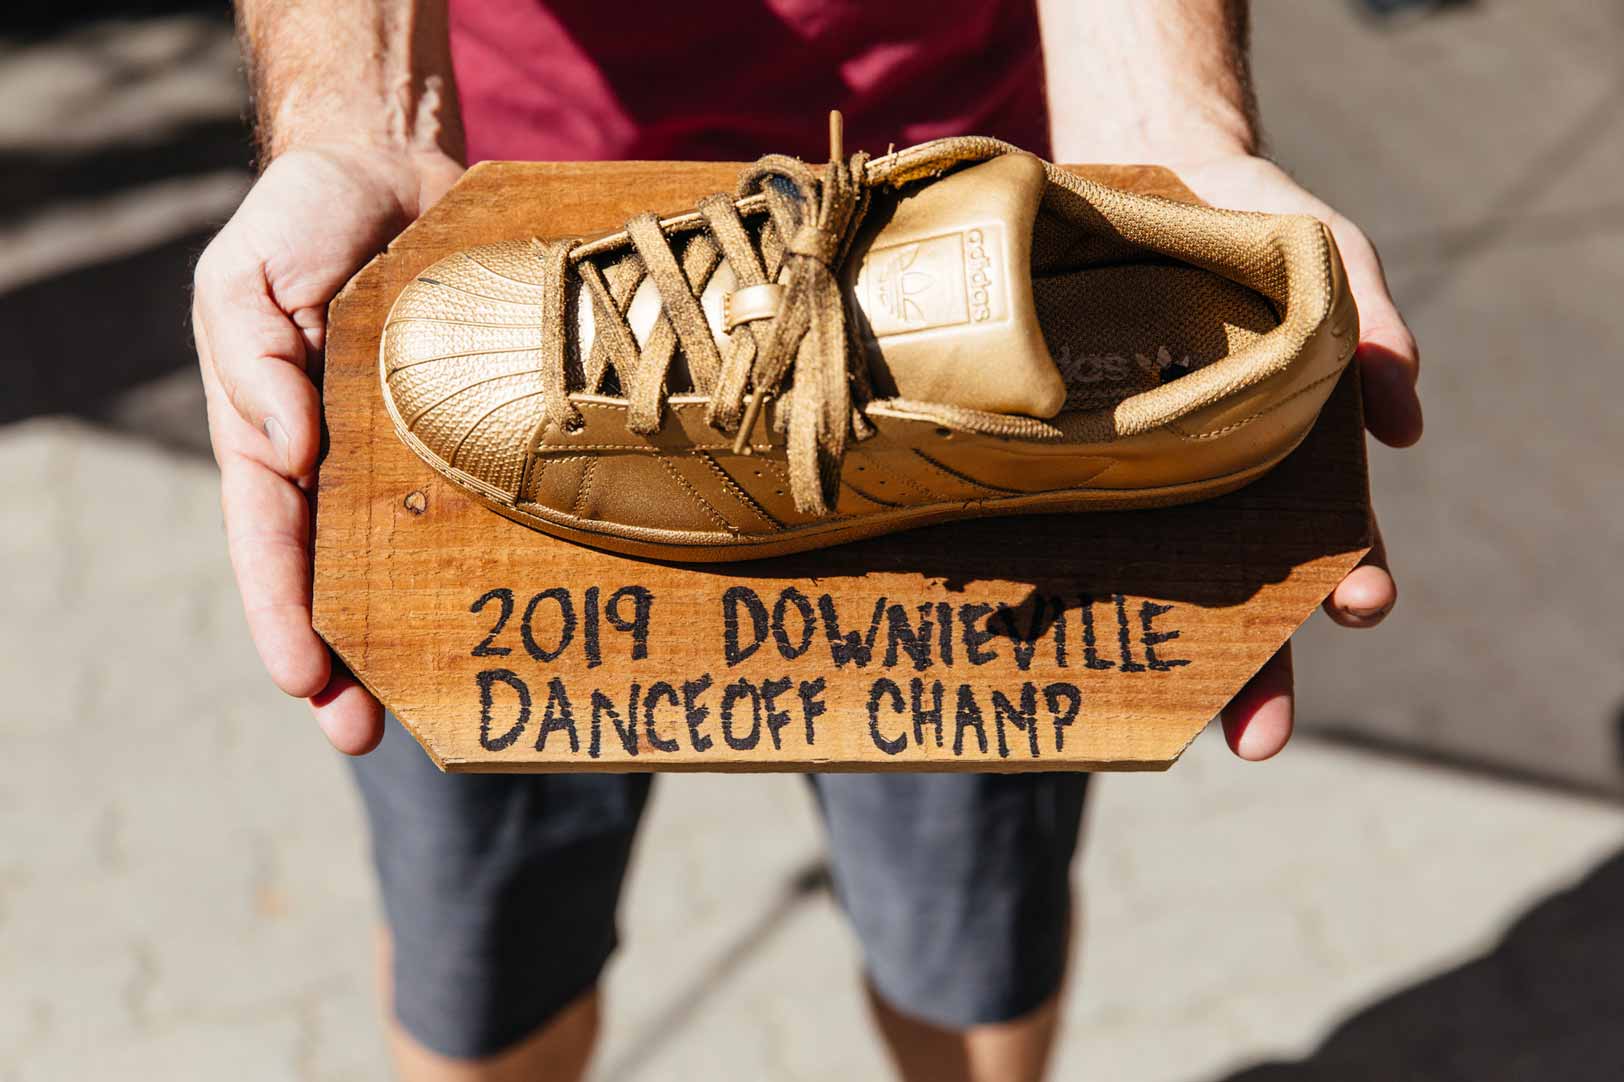 Downieville Dance Off Champ award